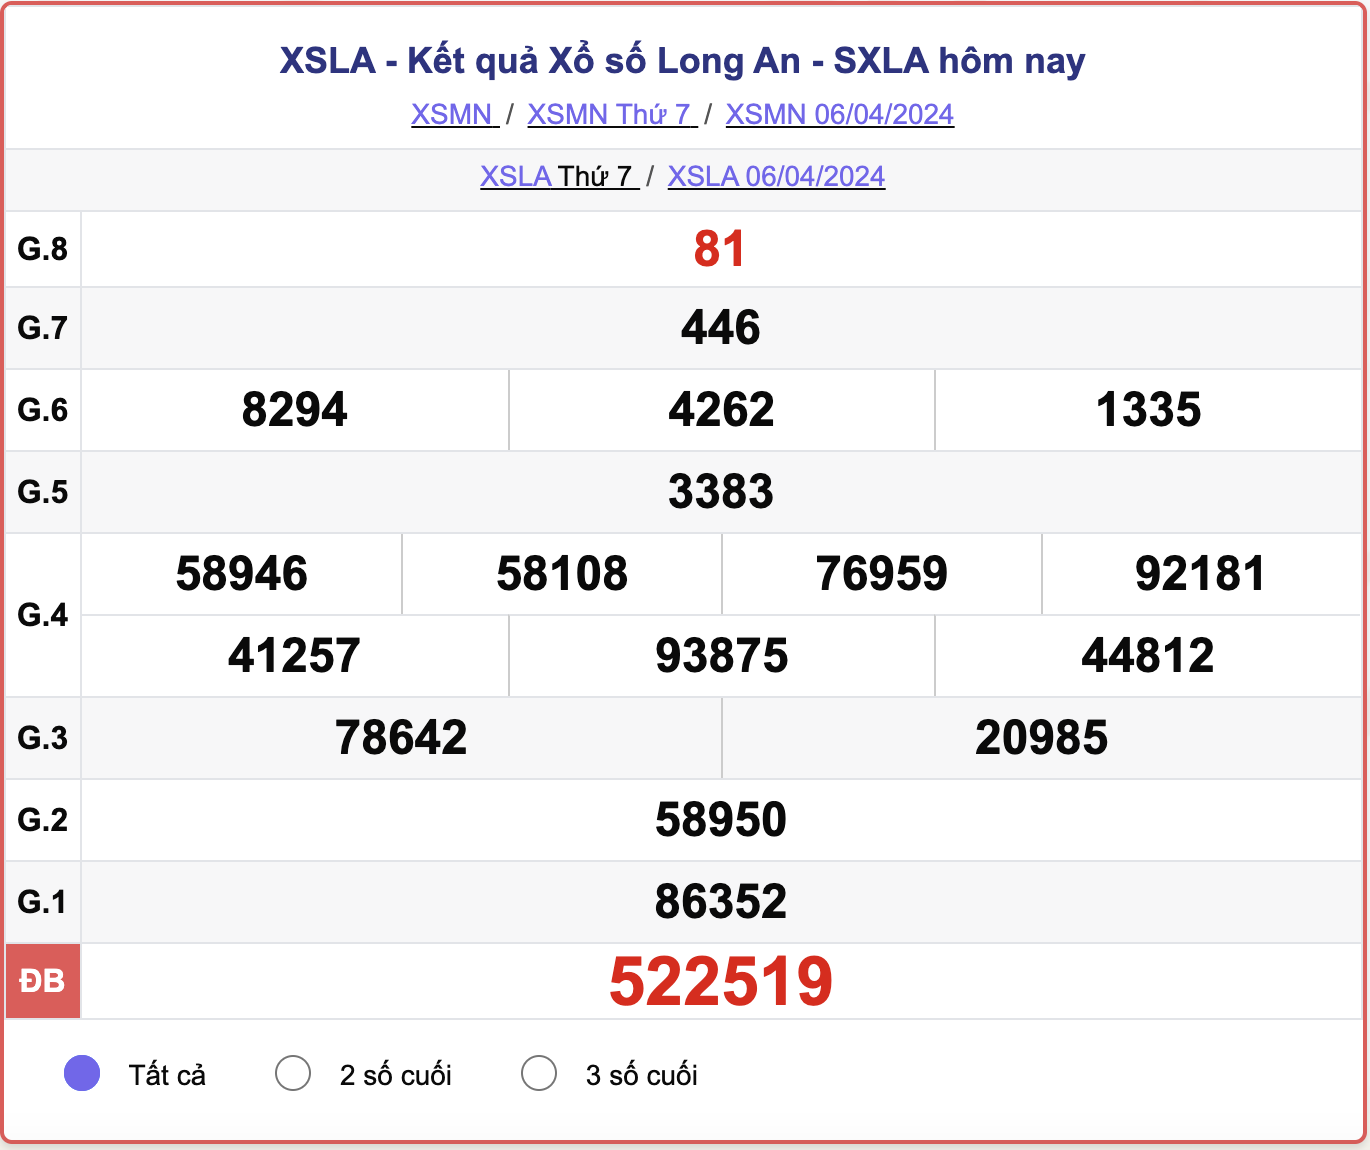 XSLA thứ 7, kết quả xổ số Long An ngày 6/4/2024